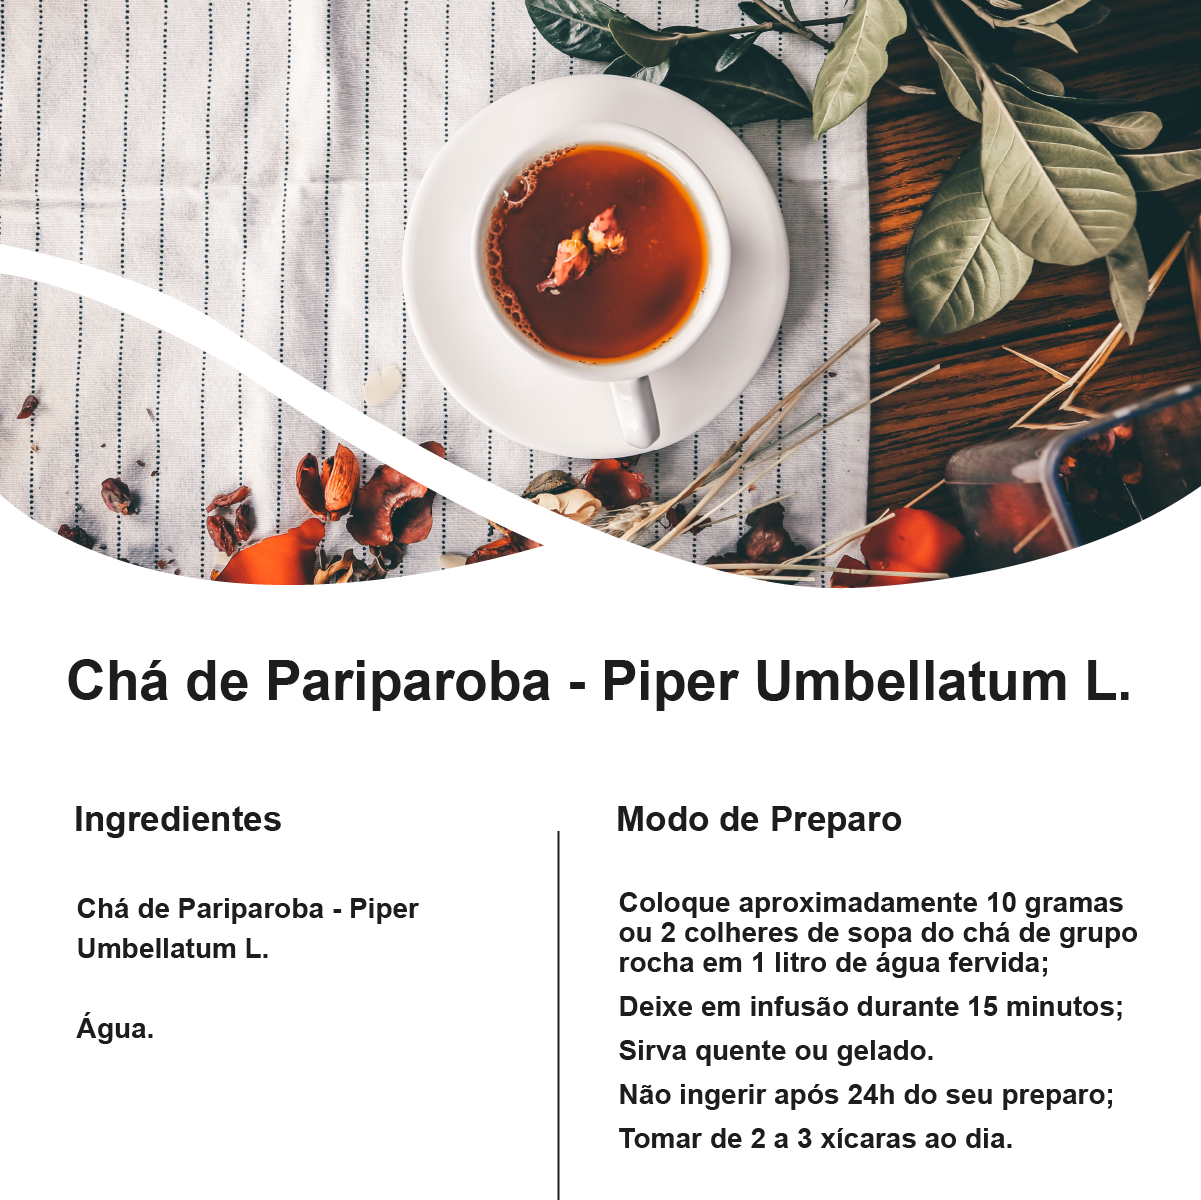 Chá de Pariparoba - Piper Umbellatum L. - 100g